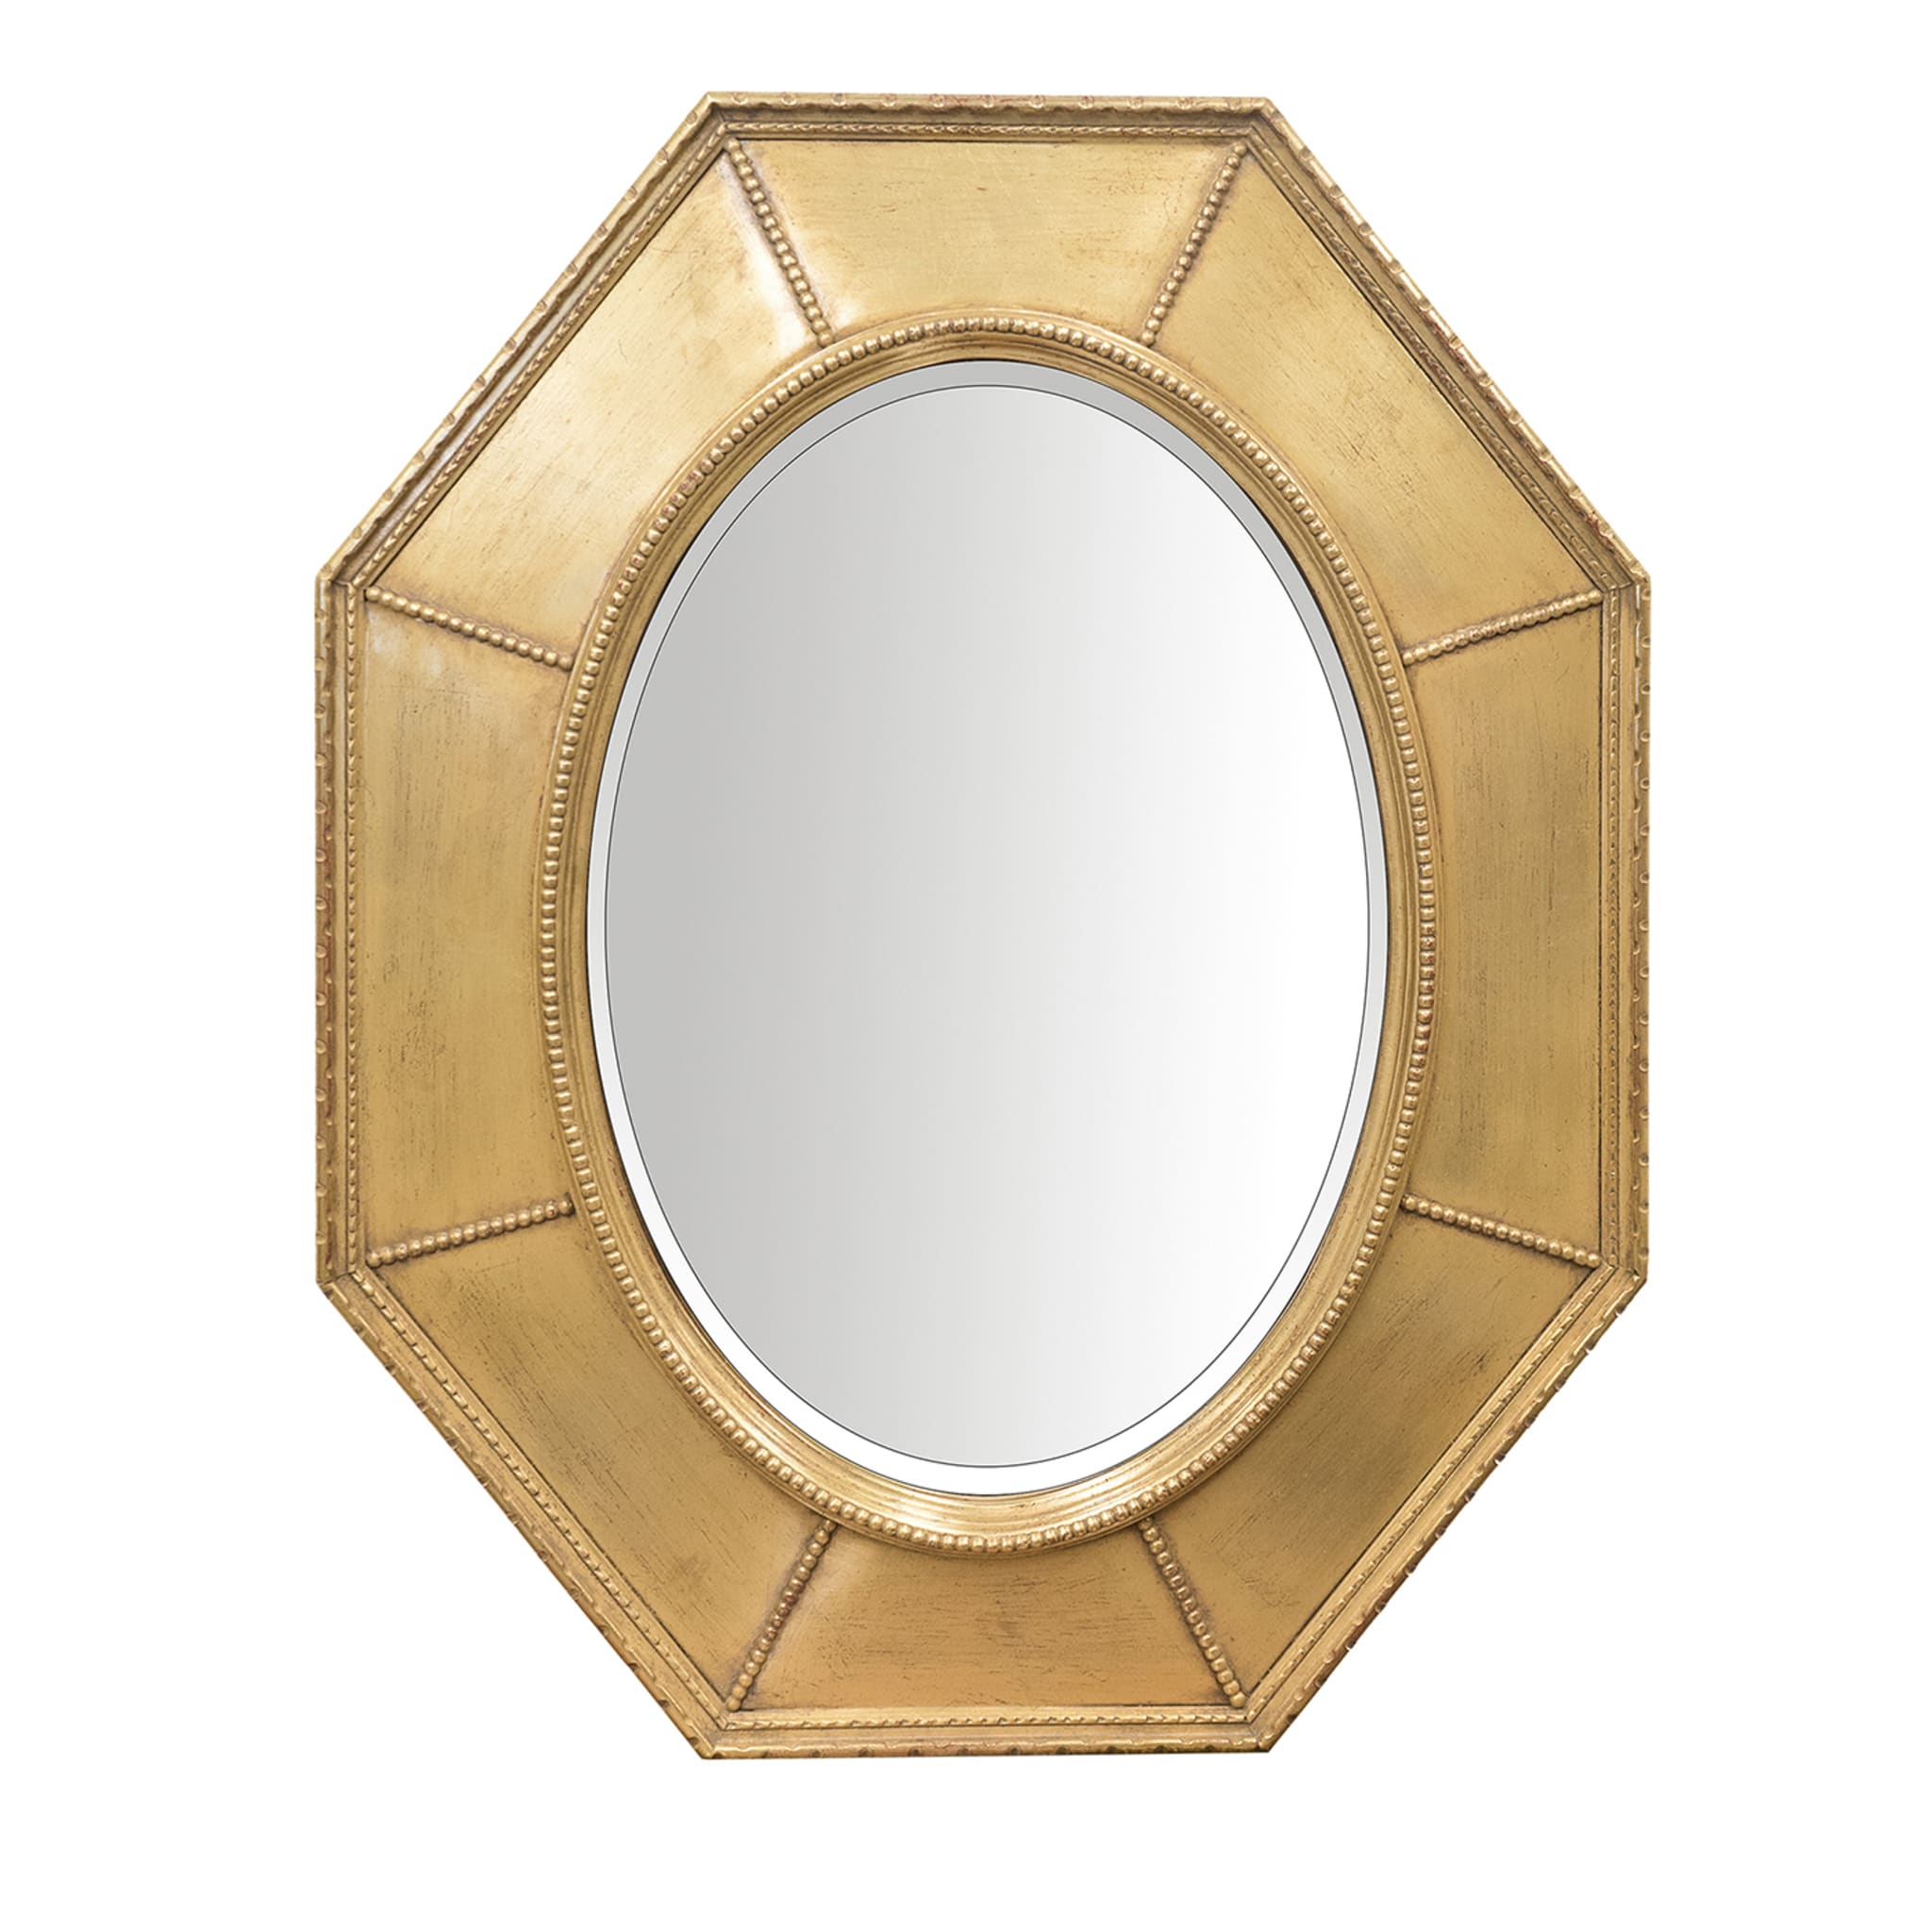 Specchio ovale con cornice ottagonale dorata - Vista principale